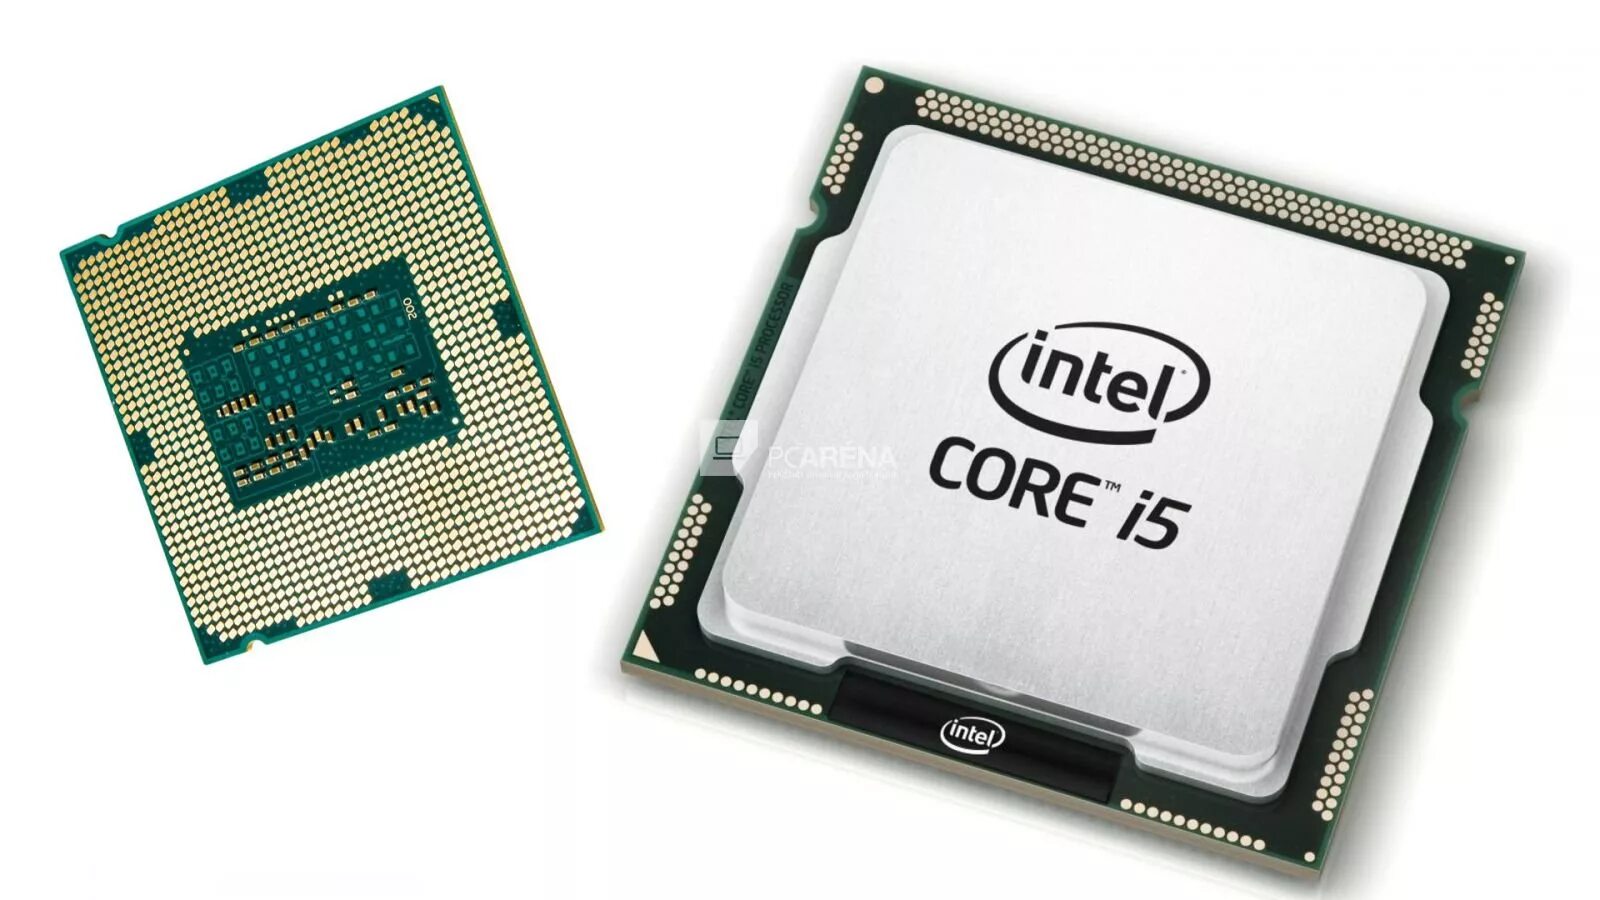 Процессор Intel Core i5 2400. Процессор Intel Core i5 inside. Intel Core i5 2400 сокет. Процессор Intel Core i5 5500.